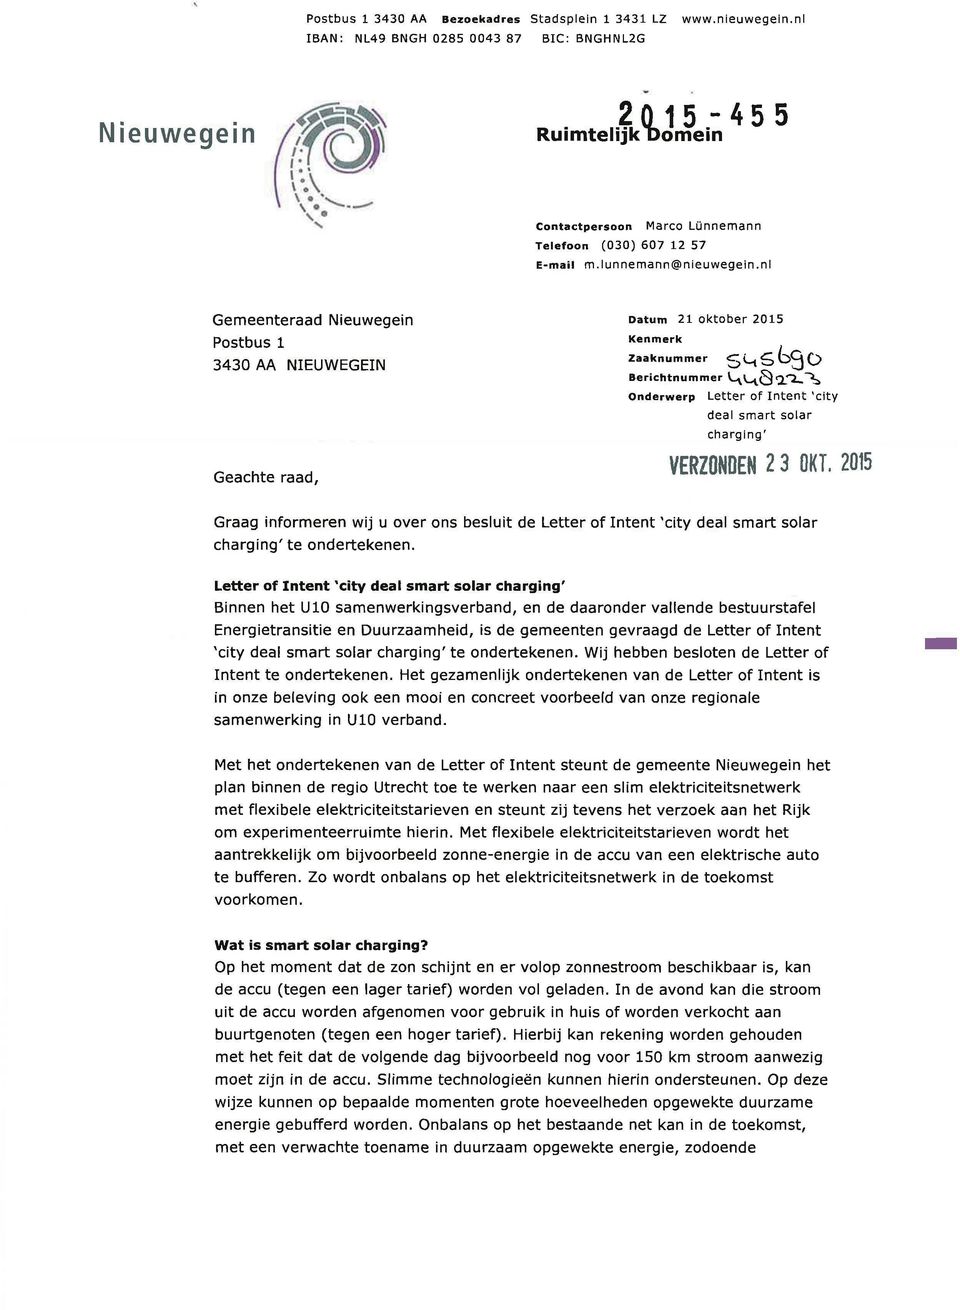 nl Gemeenteraad Nieuwegein Postbus 1 3430 AA NIEUWEGEIN Geachte raad, Datum 21 oktober 2015 Kenmerk Zaaknummer S*-l^ OMO Berichtnummer V^V^QQT^-^ Onderwerp Letter of Intent 'city deal smart solar